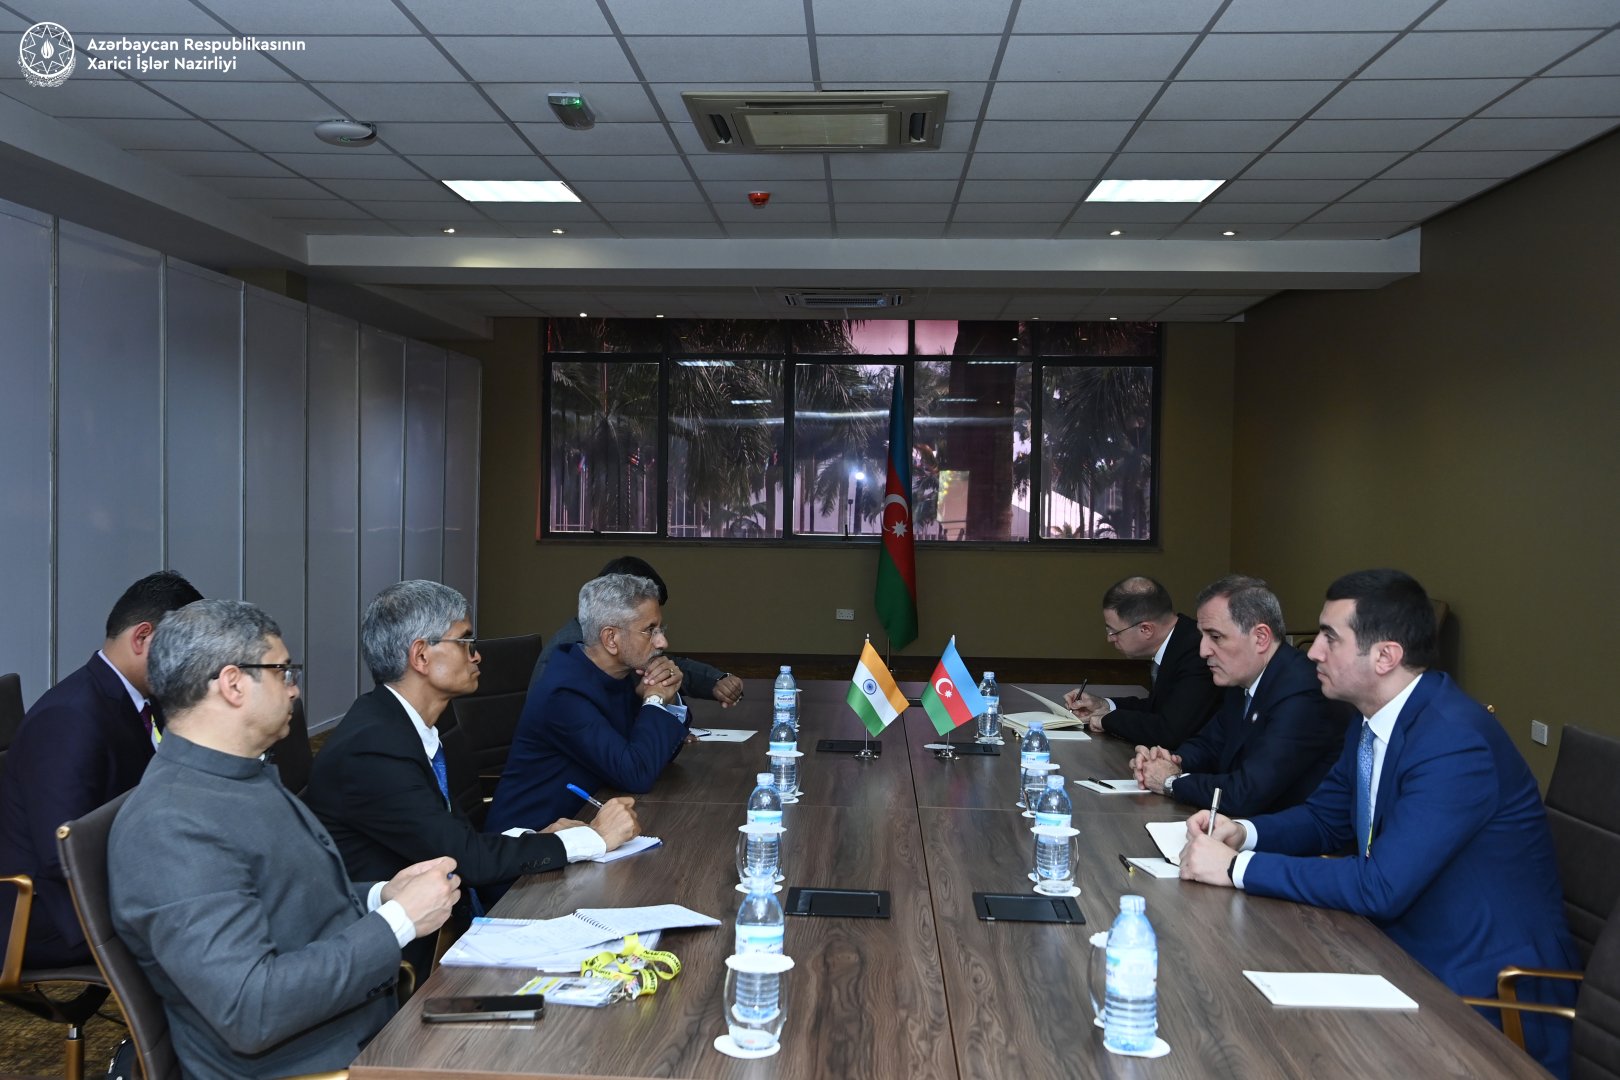 Главы МИД Азербайджана и Индии обсудили региональную ситуацию (ФОТО)